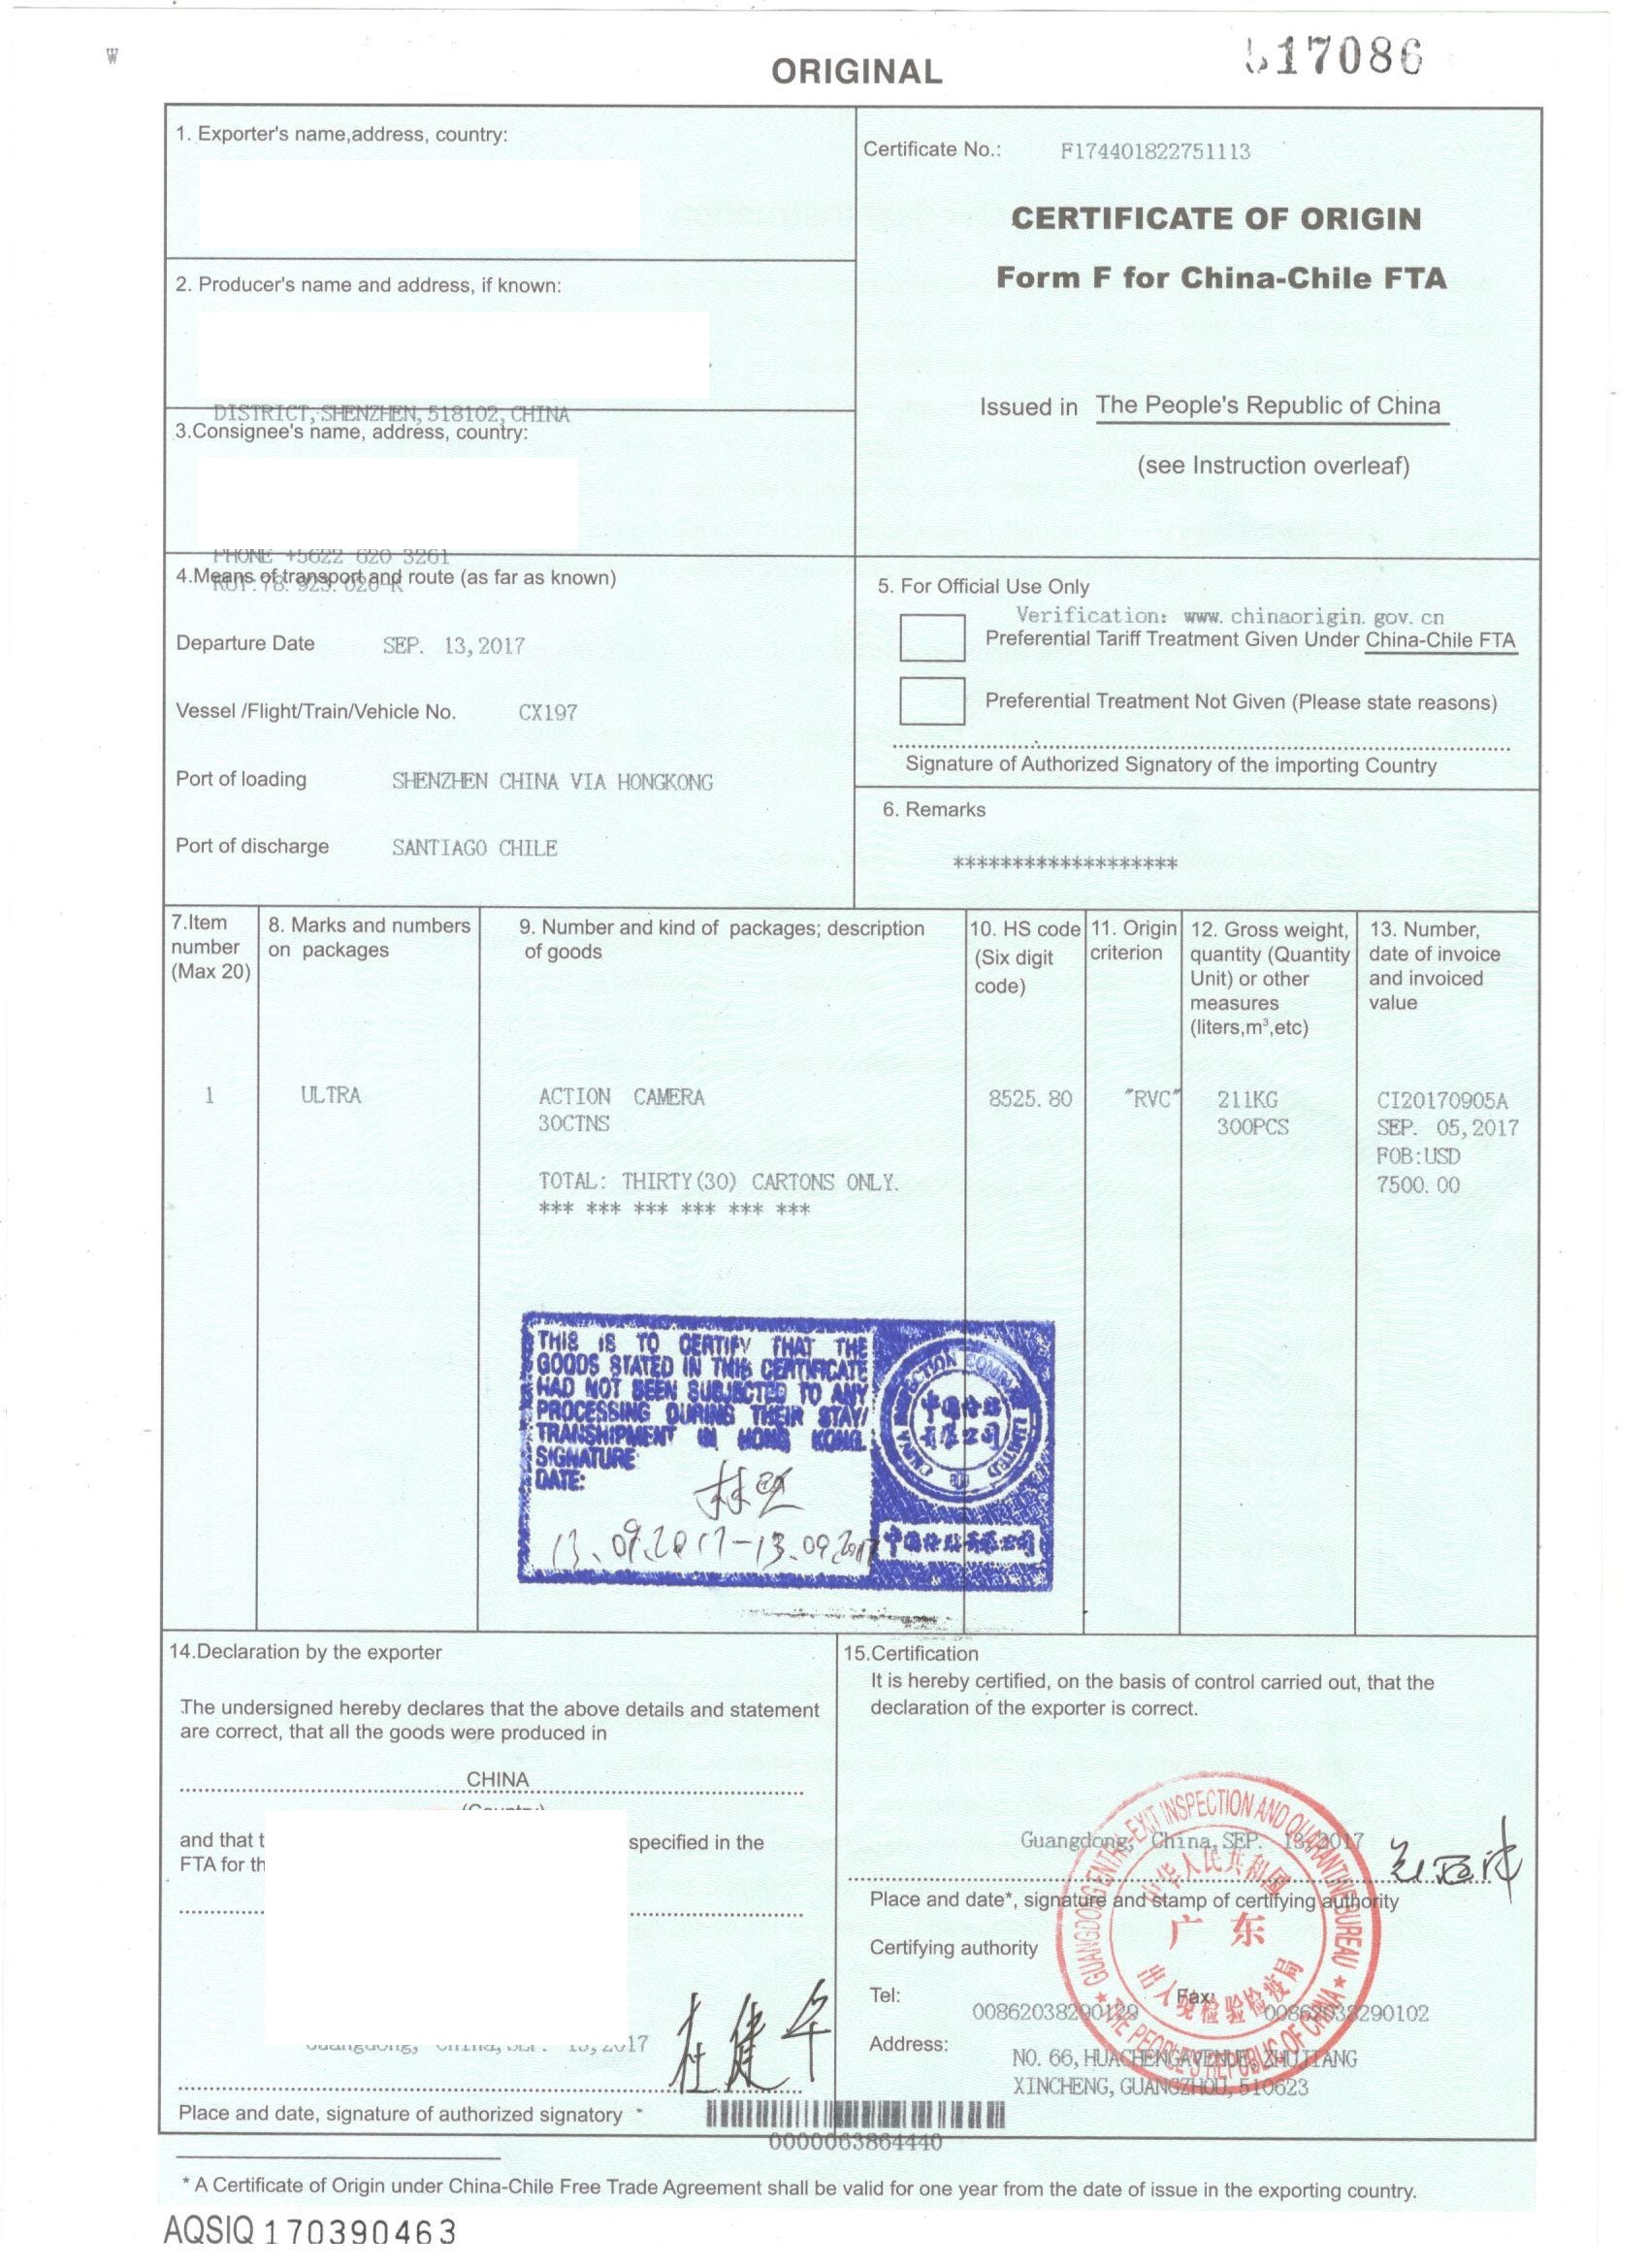 授权证书土耳其大**认证 中国香港高等法院海牙认证